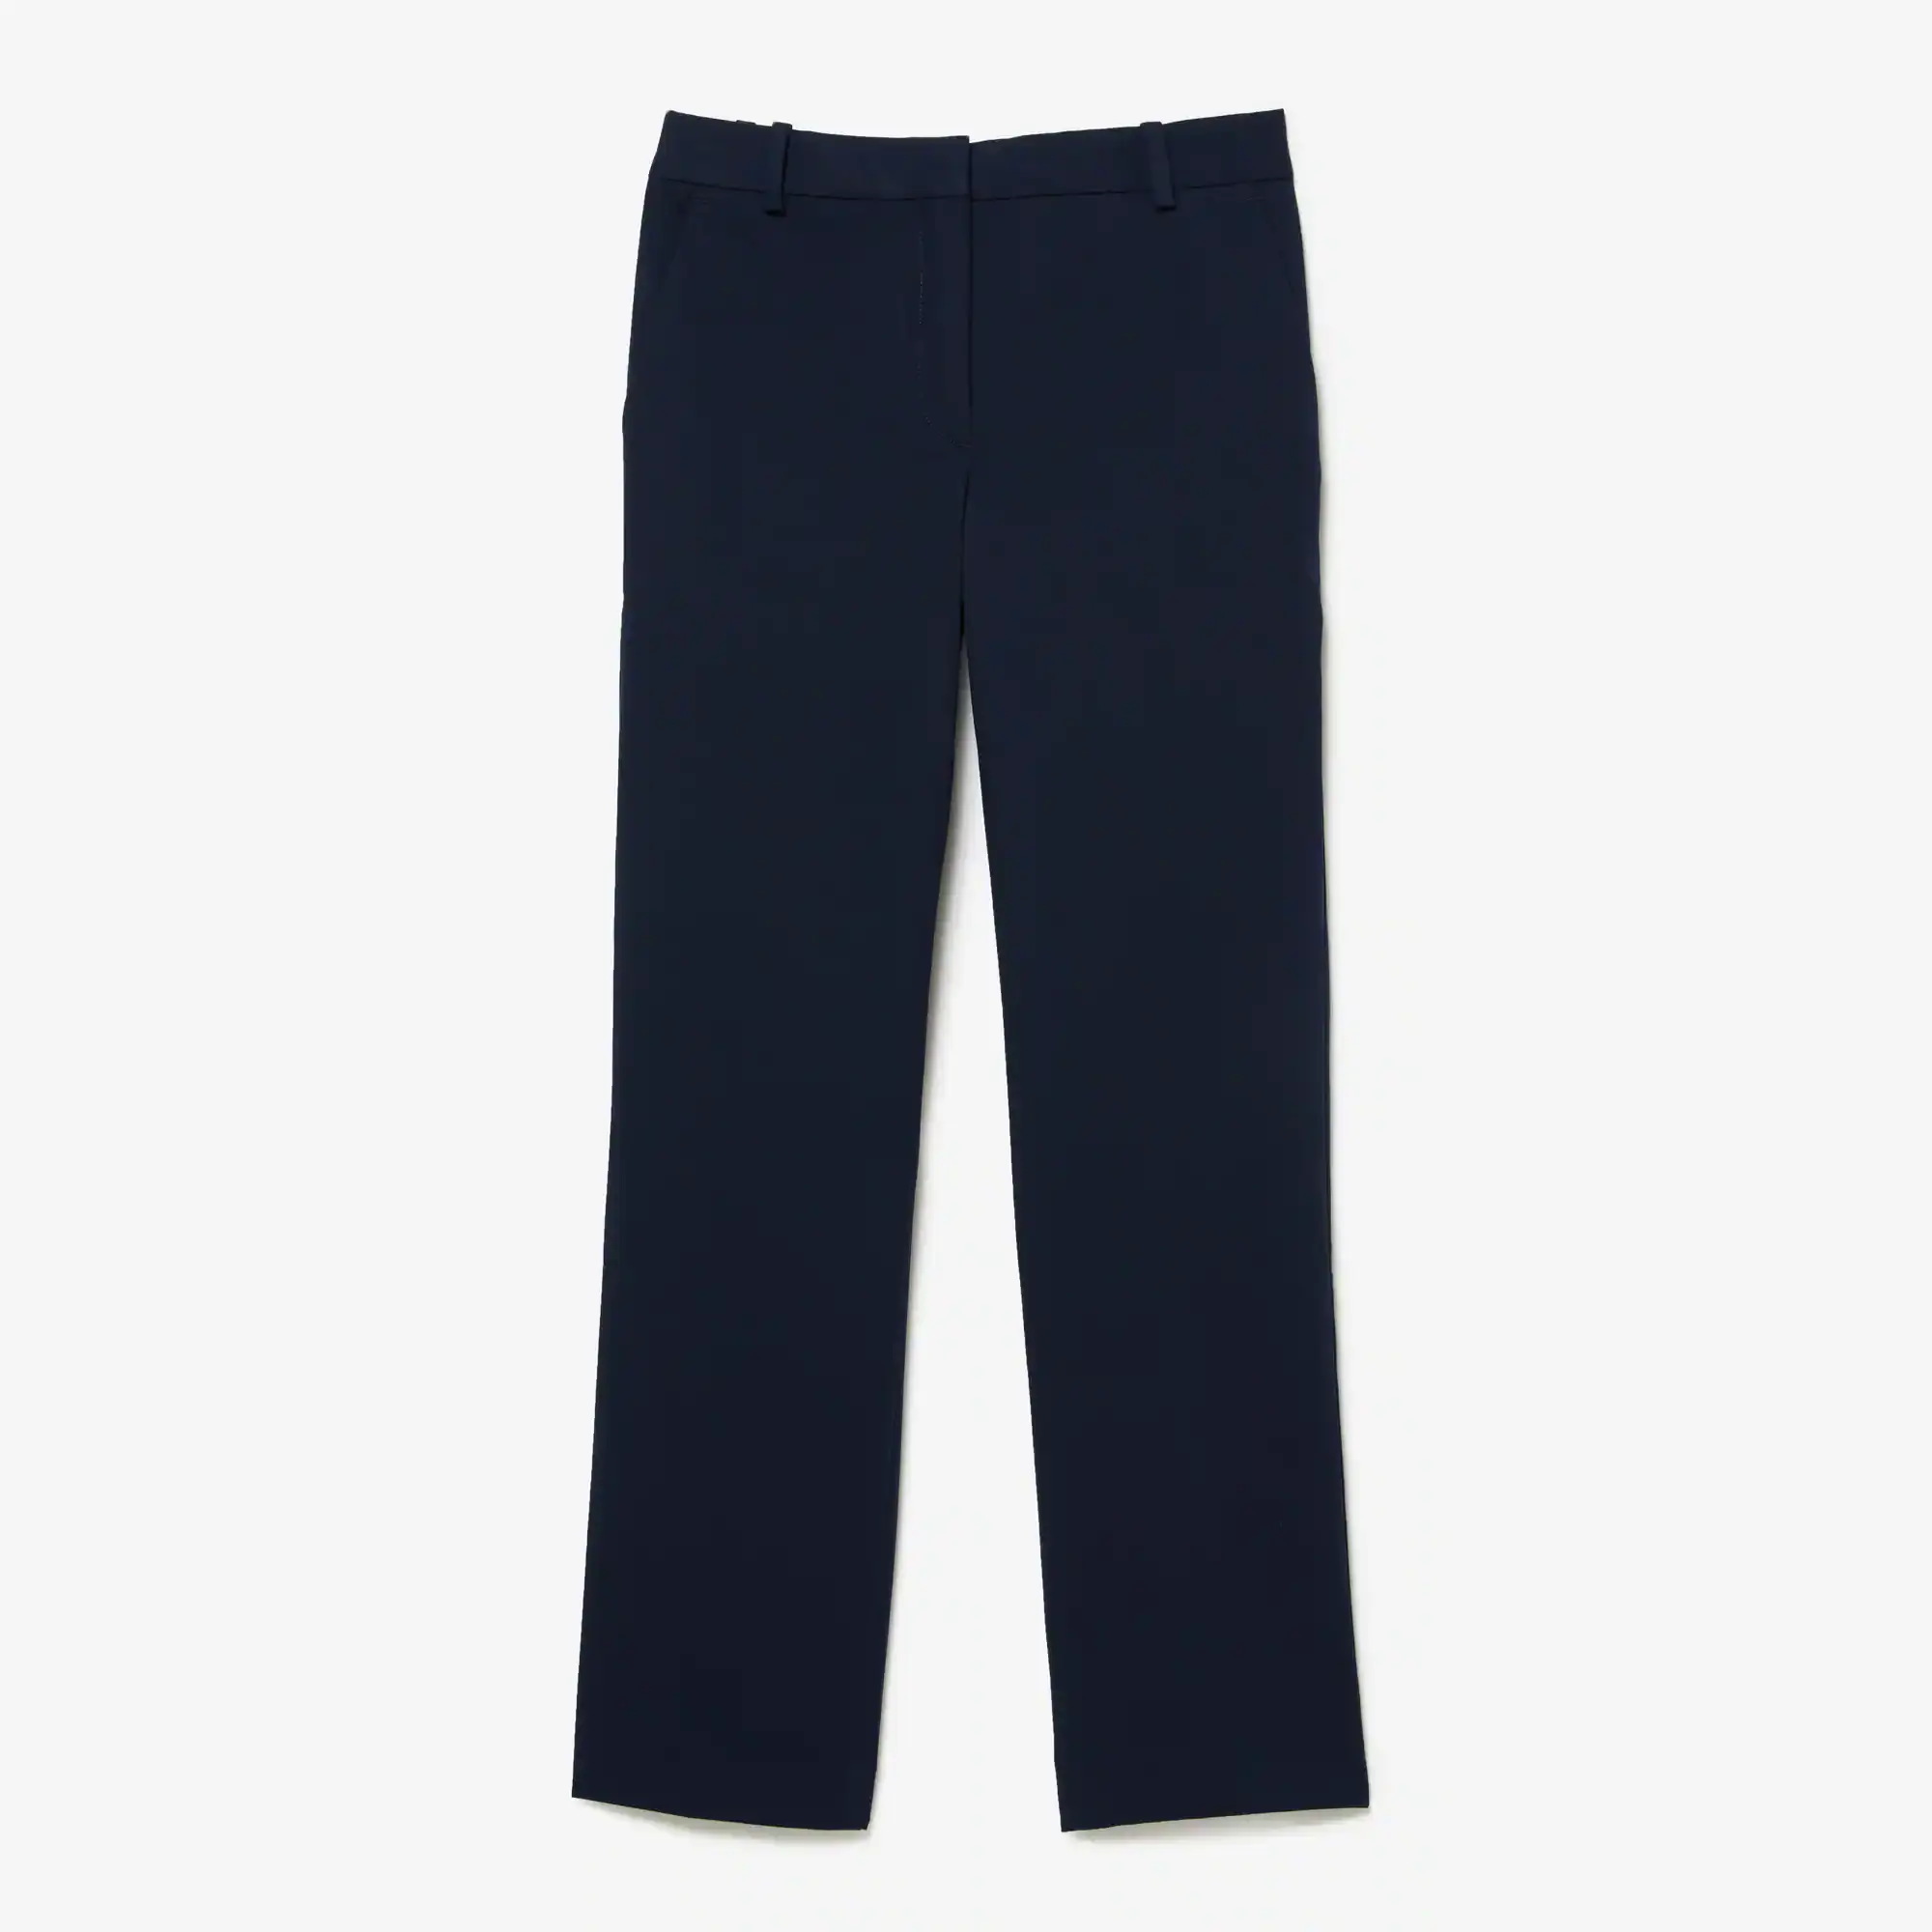 Lacoste Pantalon chino slim fit en coton stretch. 2